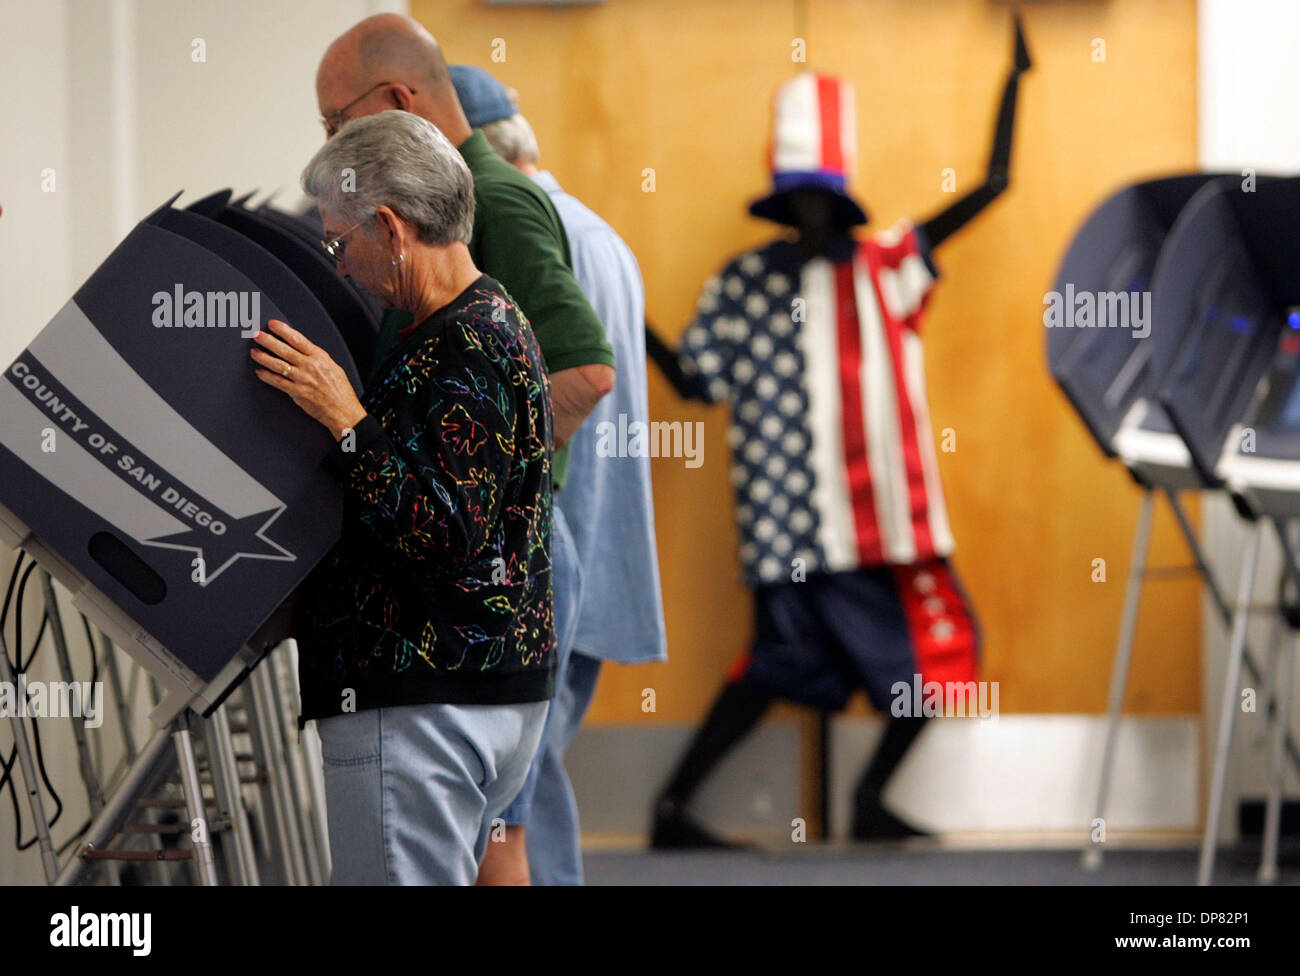 Oct 09, 2006 - San Diego, CA, EE.UU., el primer día de votación comenzó el lunes en el condado Registars office. Aquí, Sara Wood, de Imperial Beach, y su esposo Merrill Madera, detrás, votar el lunes. Foto de stock